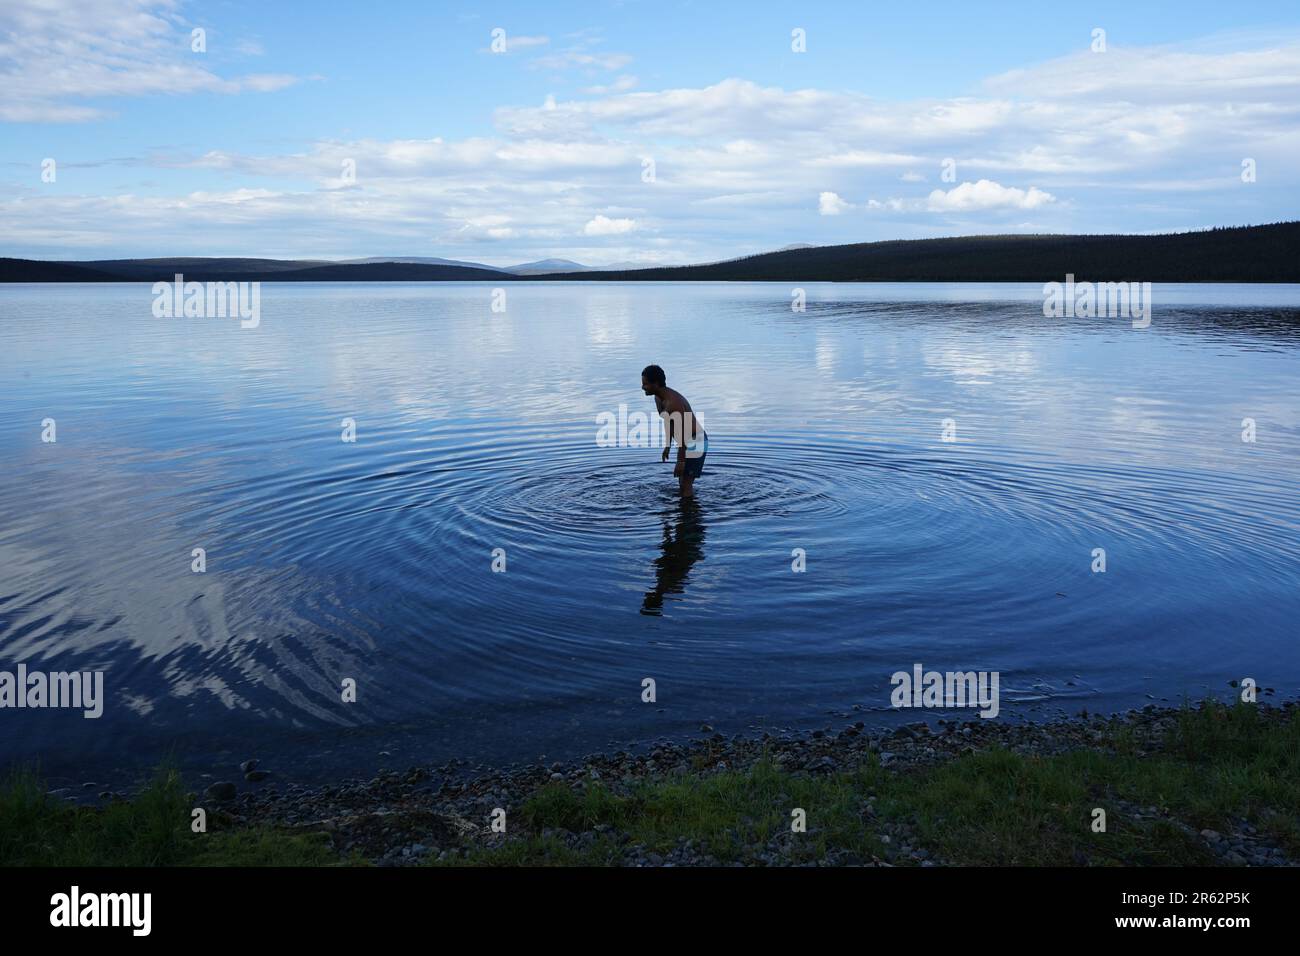 Ein ruhiger Blick auf den See mit klarem, kaltblauem Wasser. Ein Mann steht im See und erzeugt kreisförmige Wellen, die die Schönheit der abgelegenen Umgebung genießen. Stockfoto